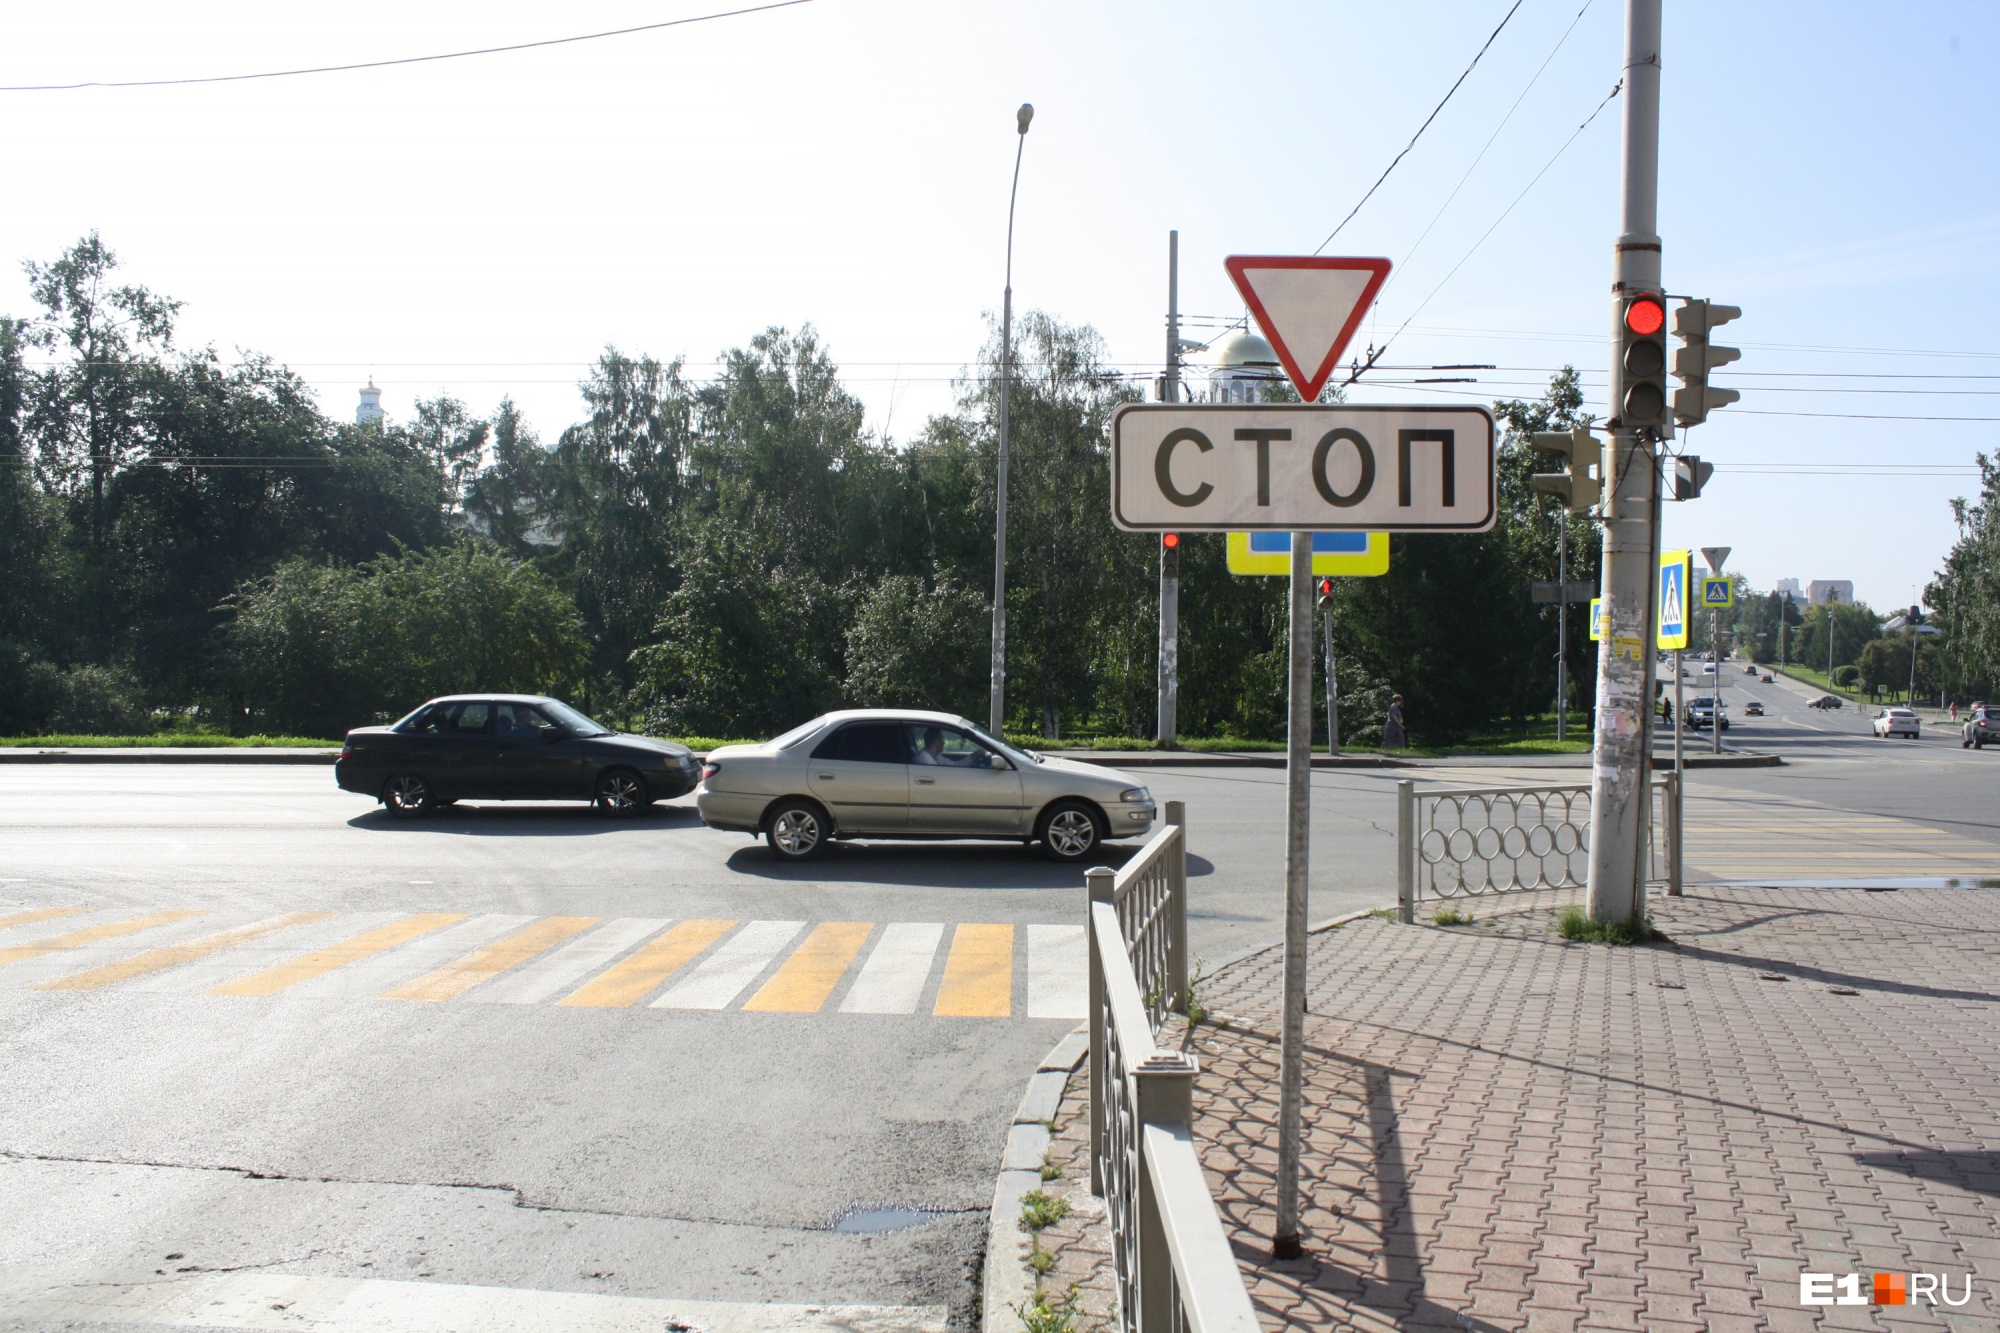 В Екатеринбурге возле дома губернатора установили новый светофор, чтобы избежать аварий